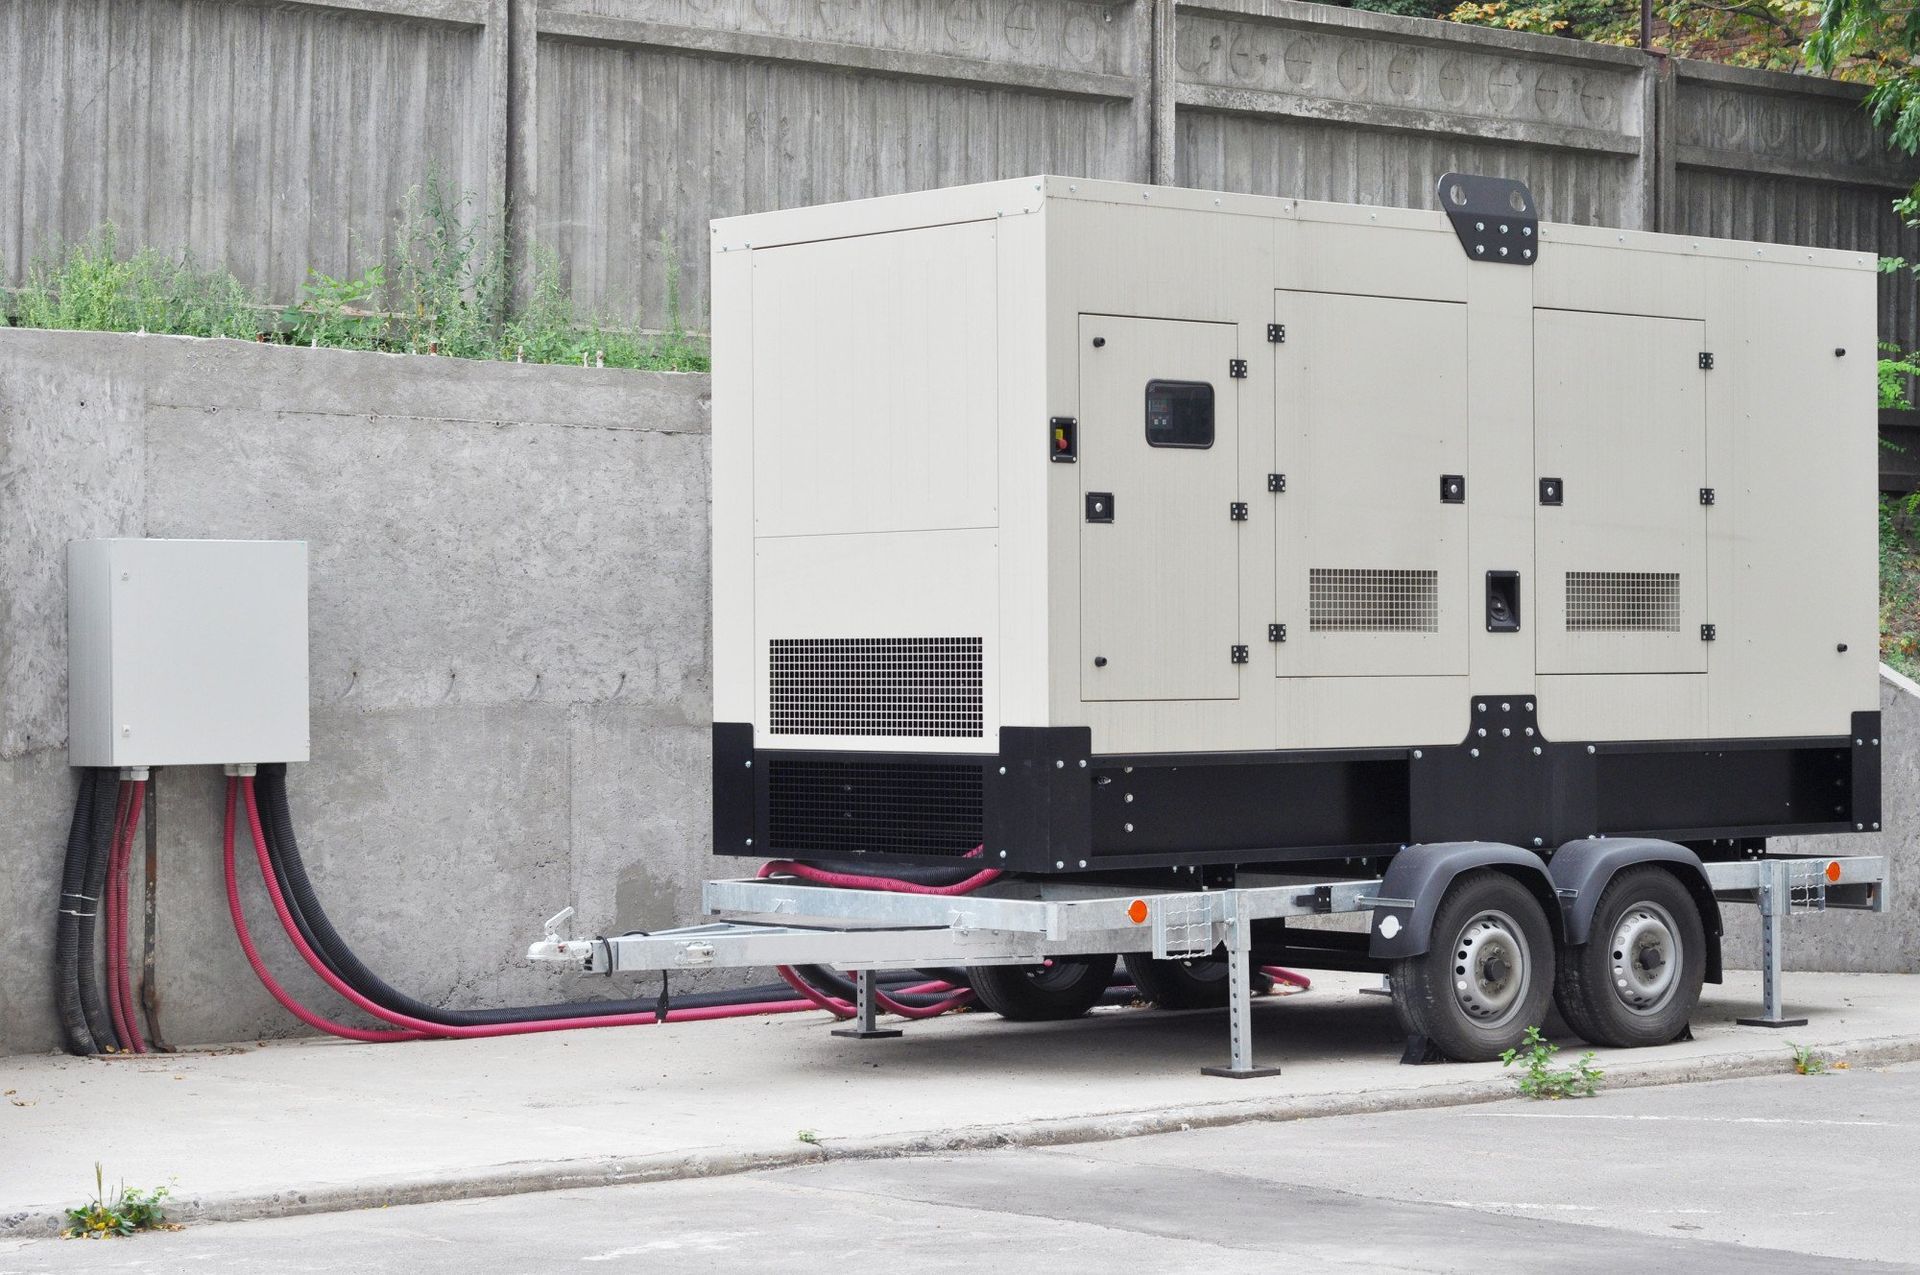 diesel generator